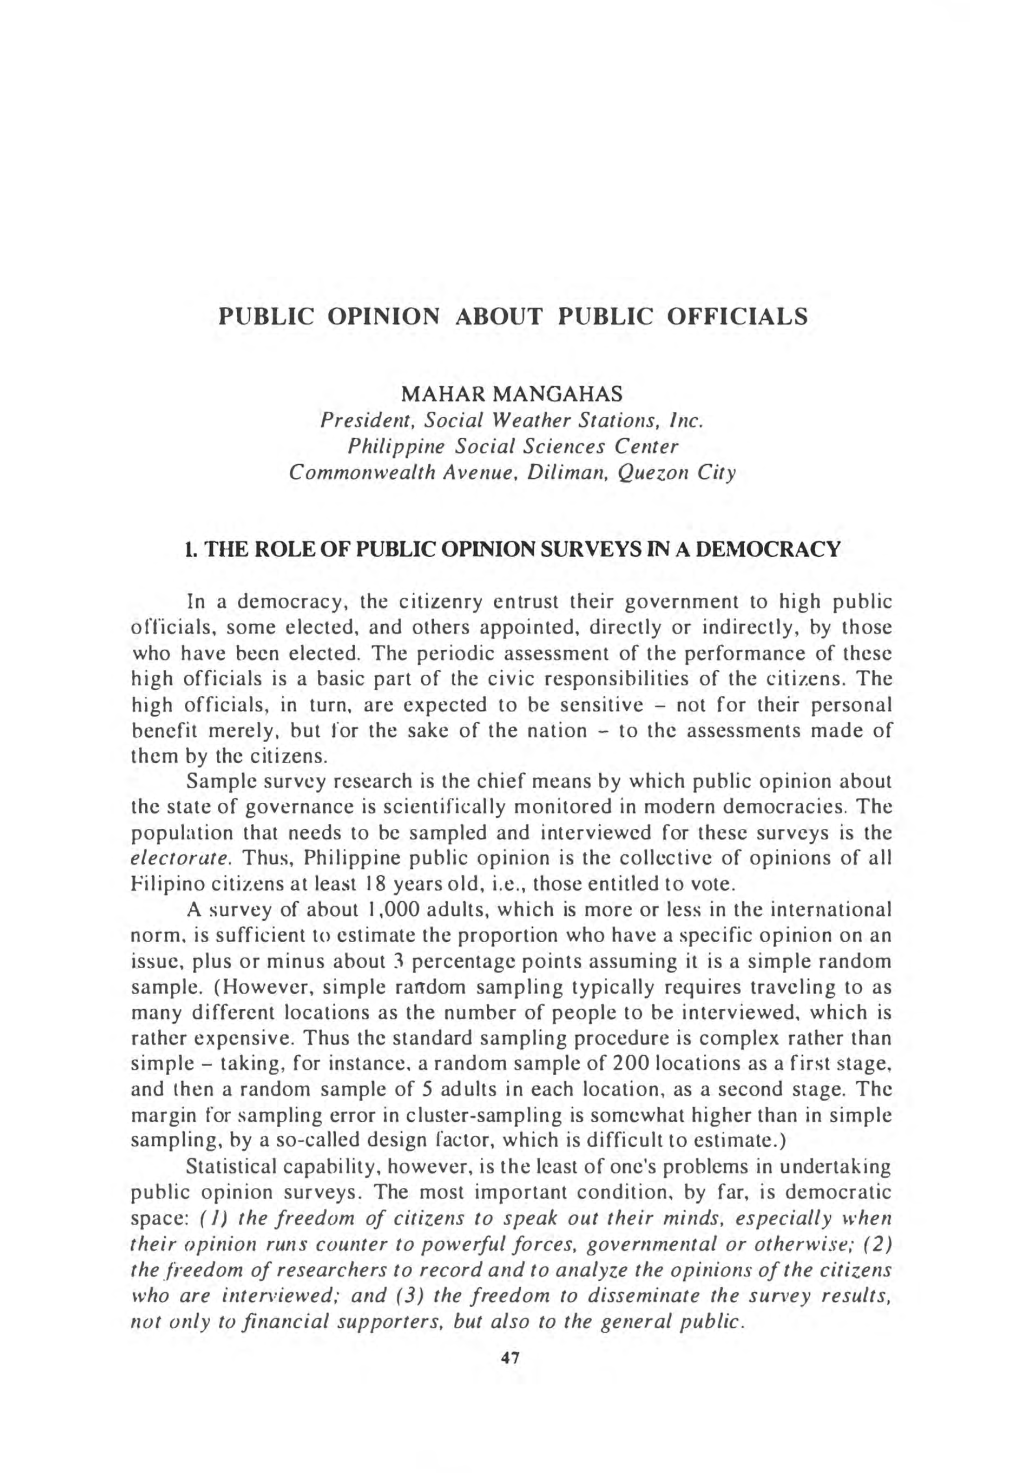 Public Opinion About Public Officials